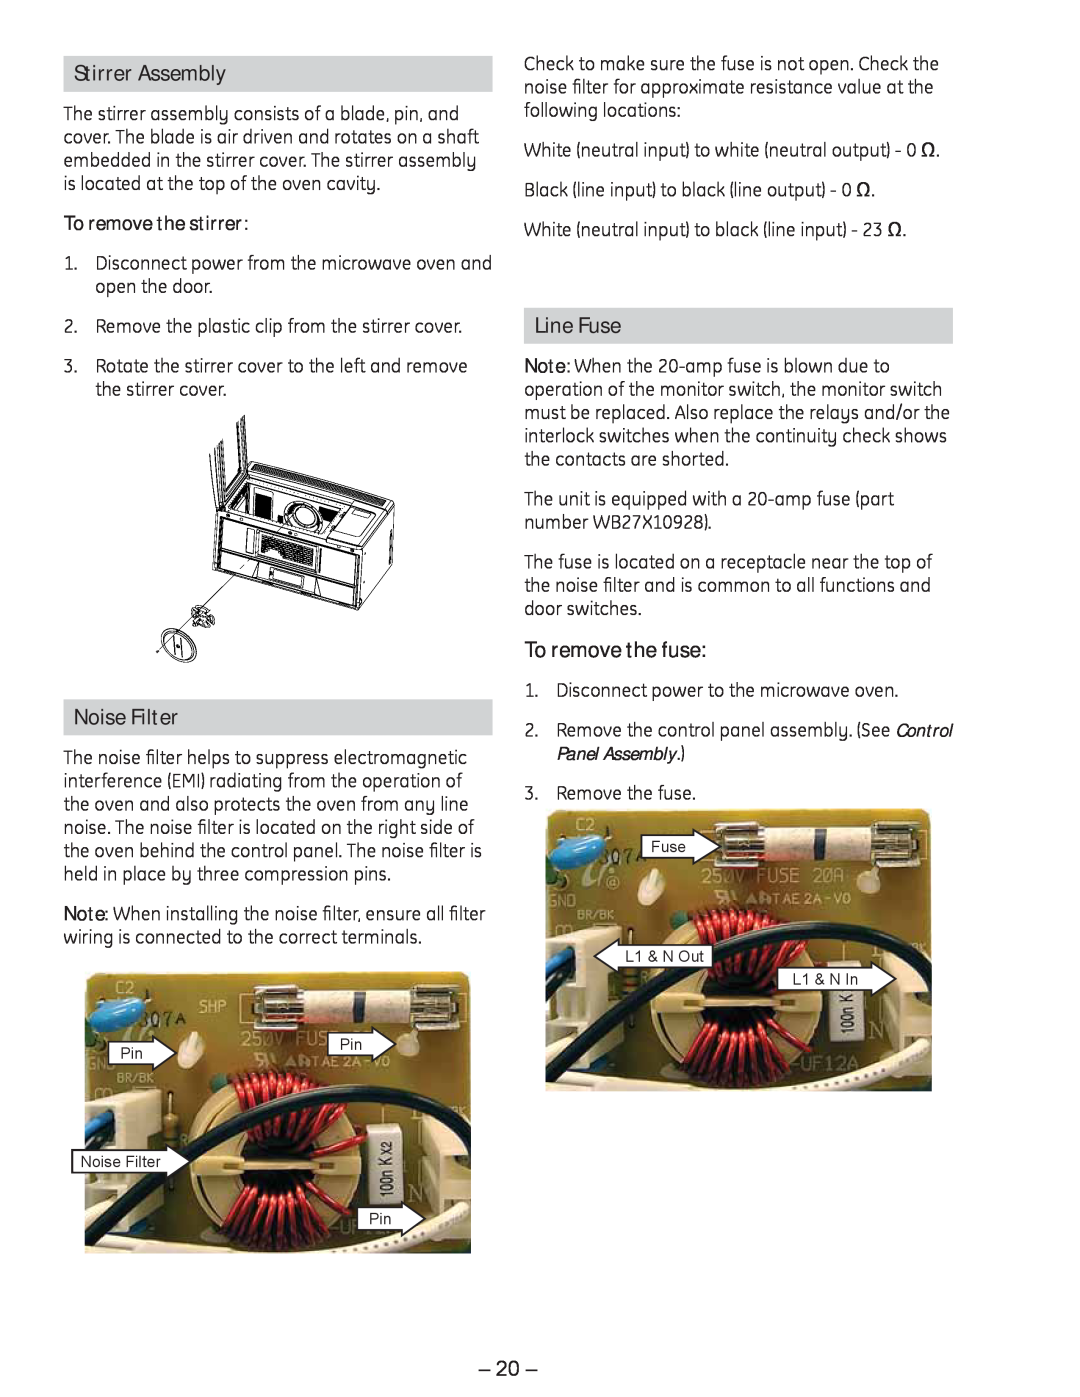 GE JVM1750 manual Stirrer Assembly, Noise Filter, Line Fuse, To remove the fuse, To remove the stirrer 